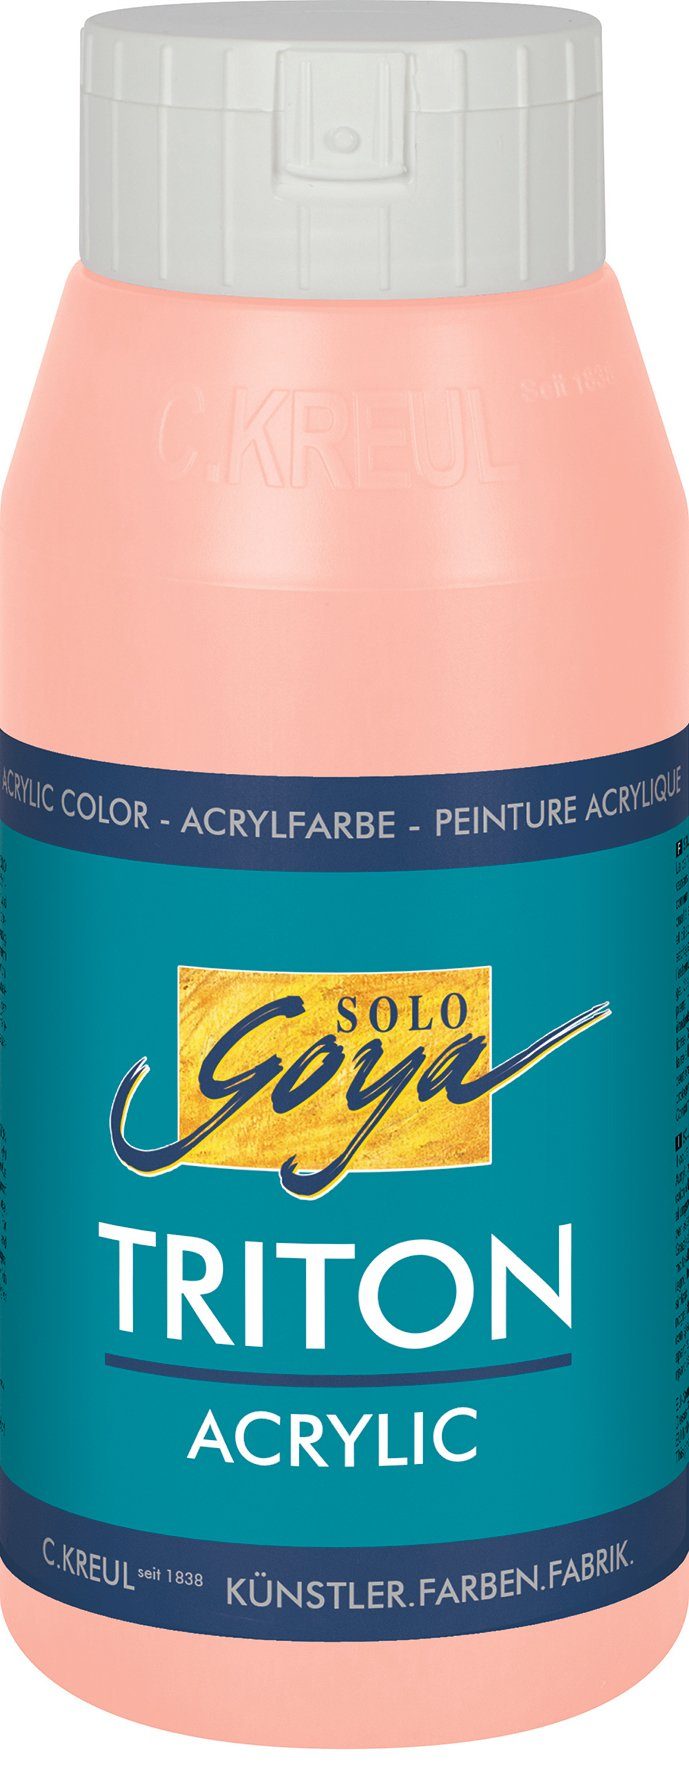 Kreul Solo Acrylic, Triton ml 750 Acrylfarbe Goya Pfirsich-Rosa